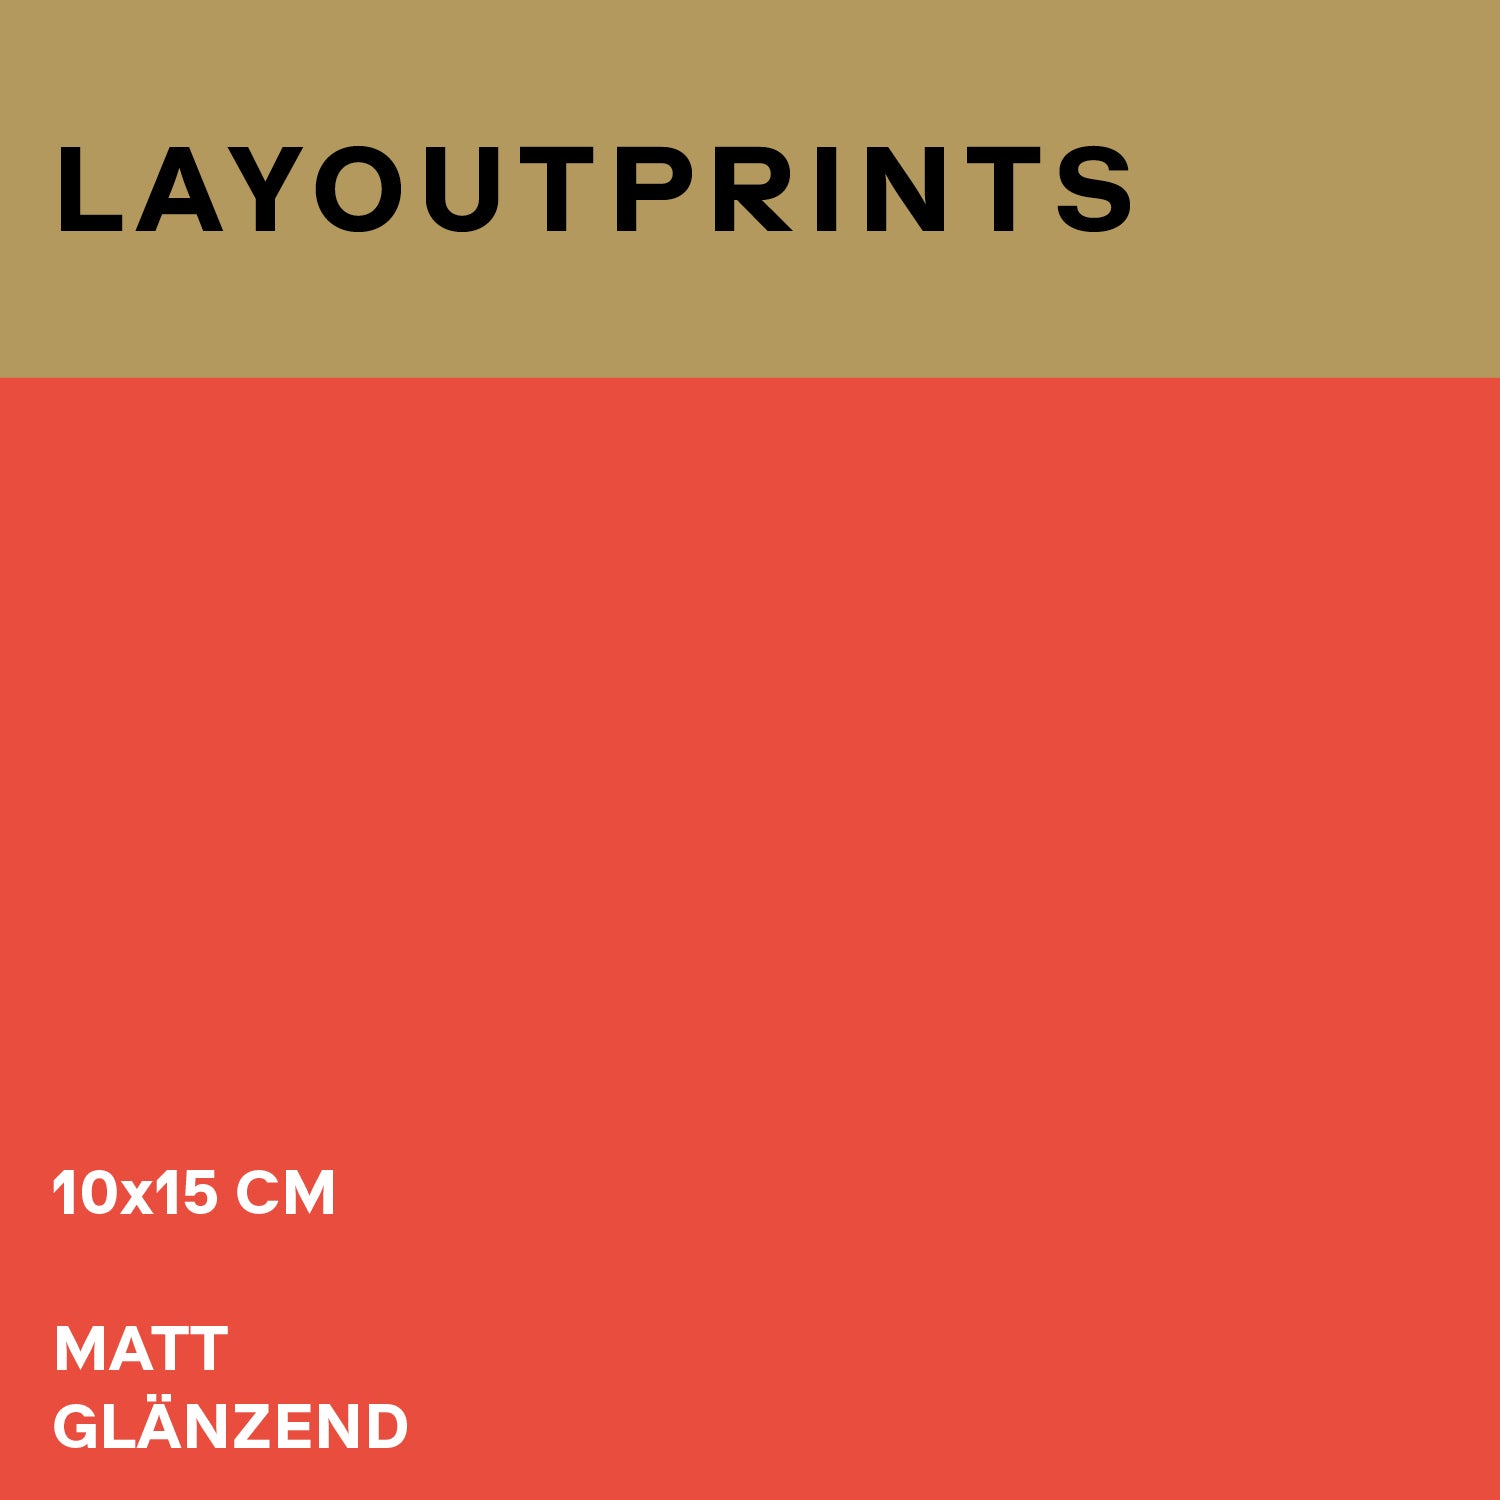 Layoutprints